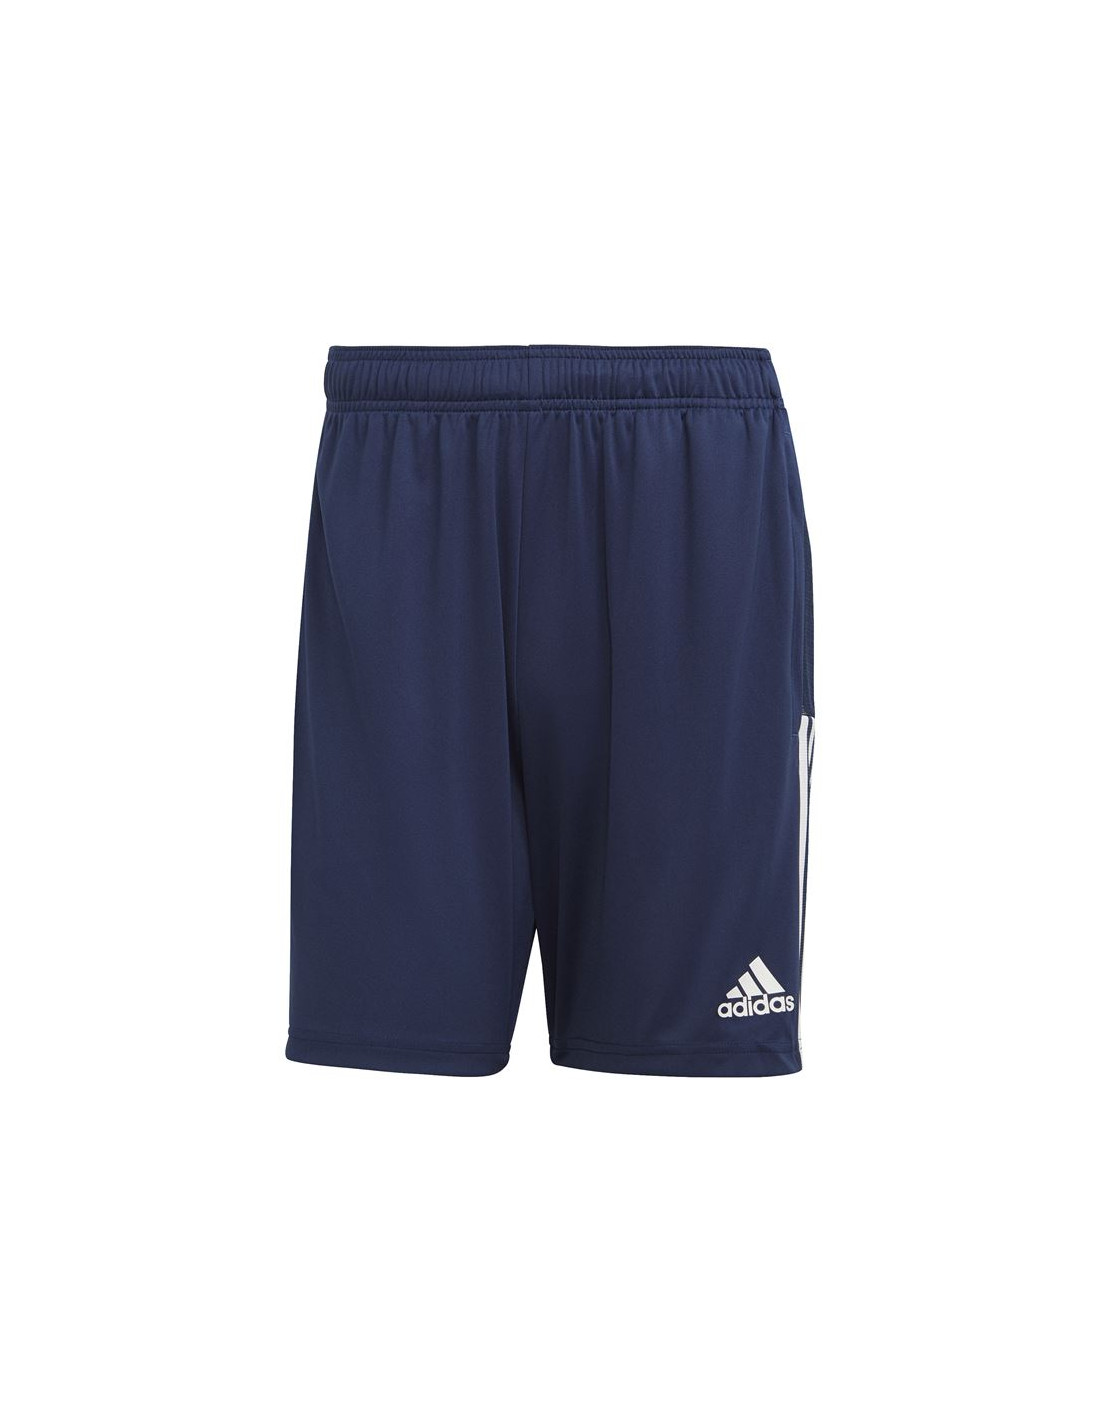 Pantalones cortos entrenamiento adidas tiro m blue